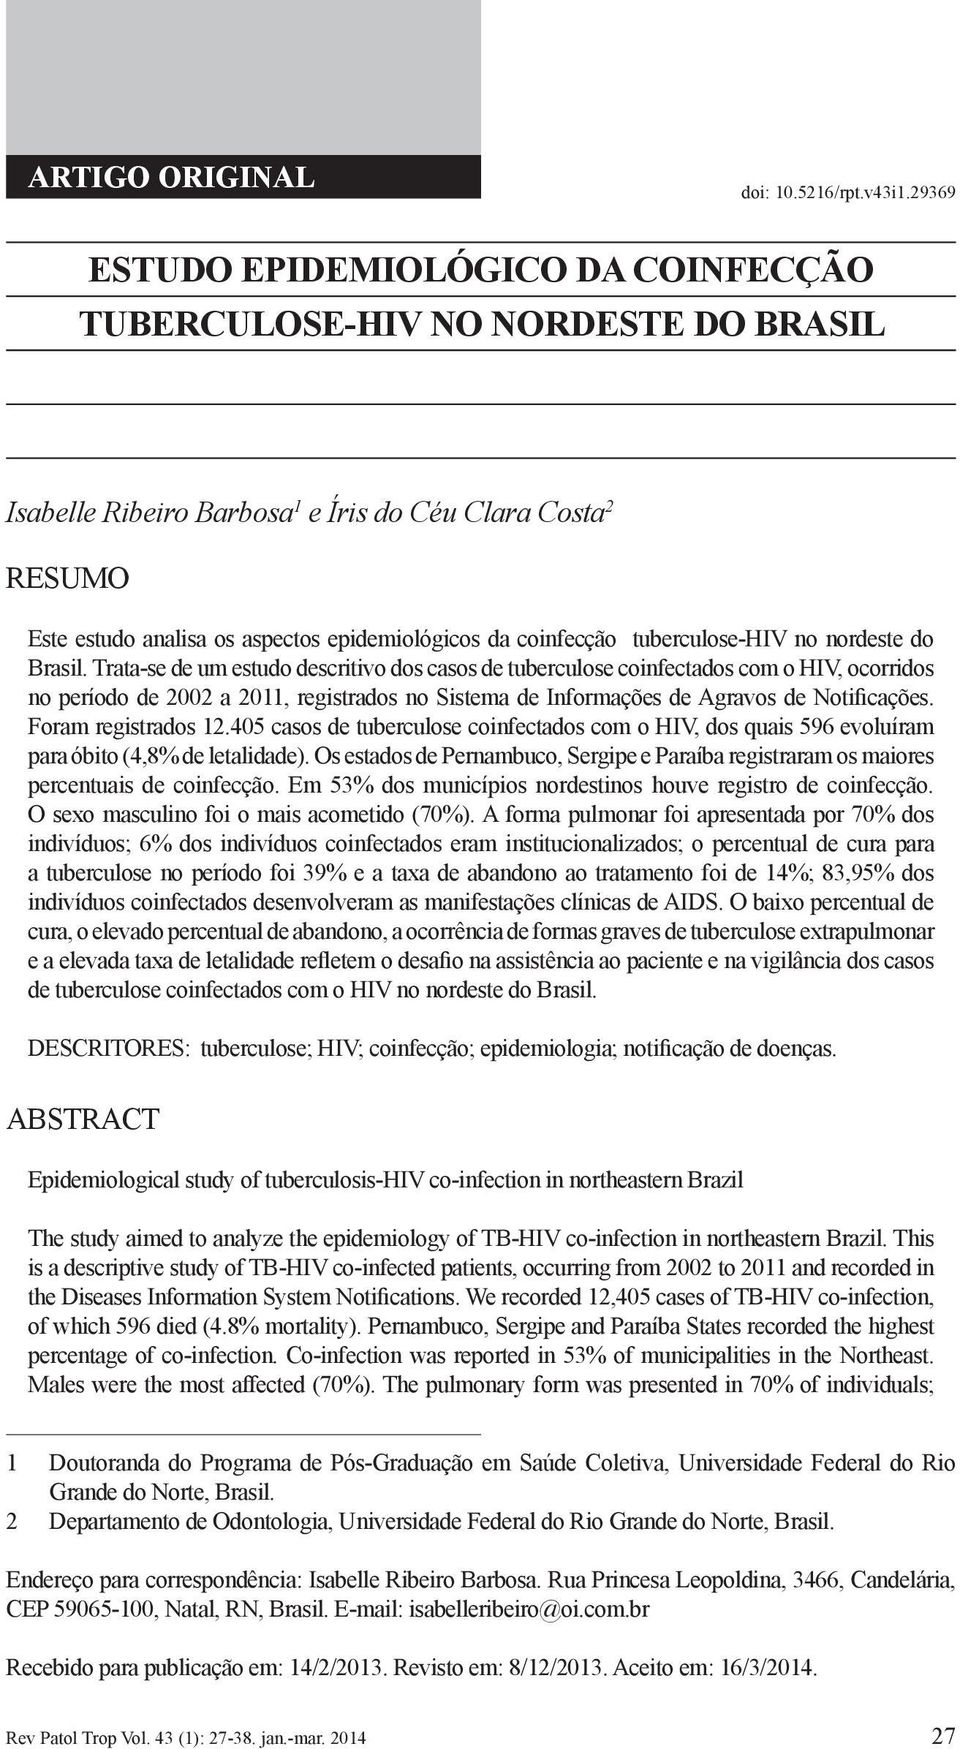 coinfecção tuberculose-hiv no nordeste do Brasil.